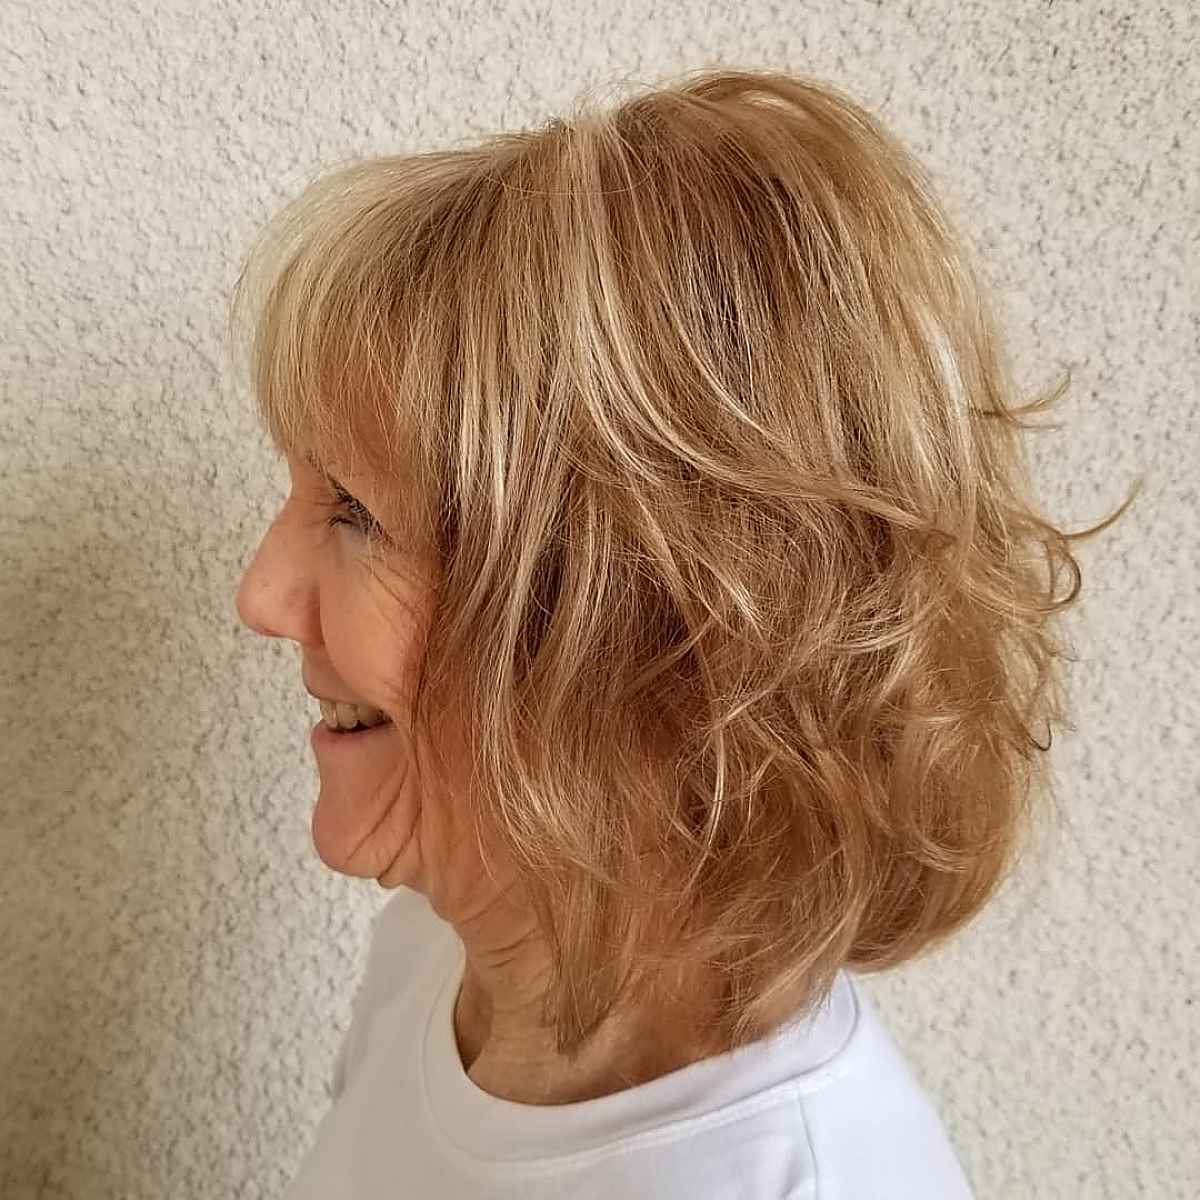 Wavy Short Hair with Fringe for Older Women